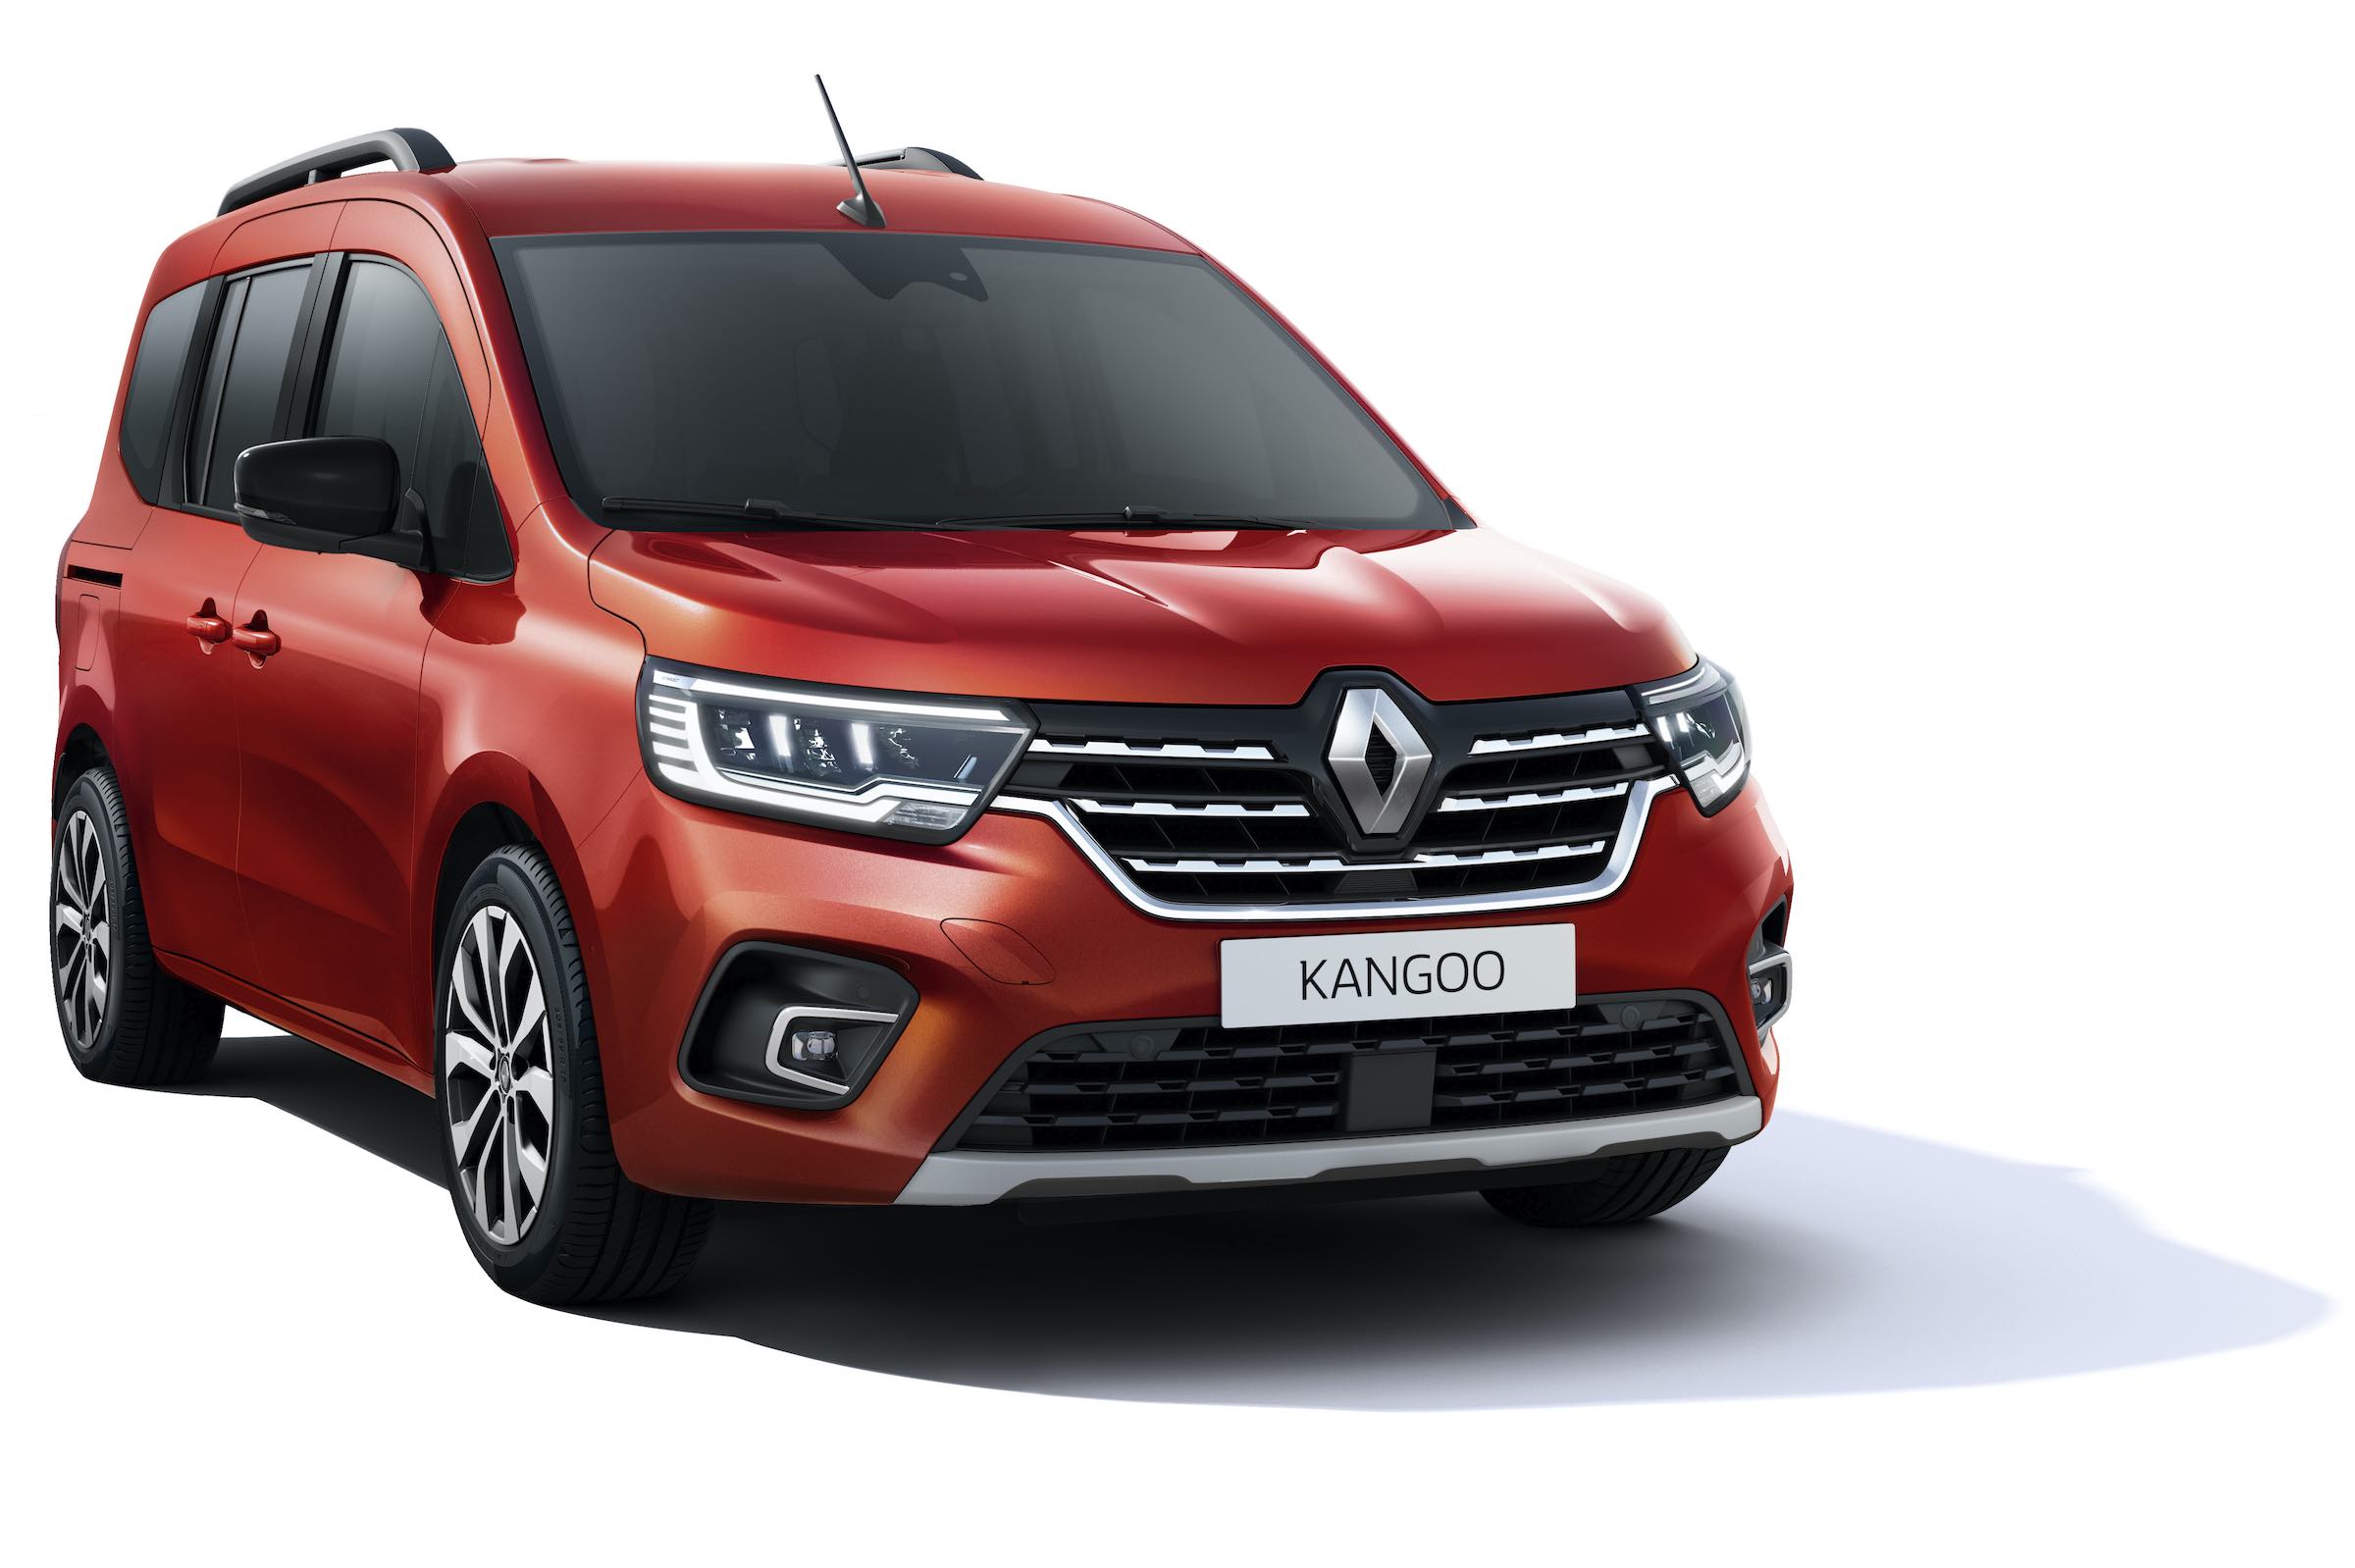 Oto nowe Renault Kangoo. Po 13 latach od premiery